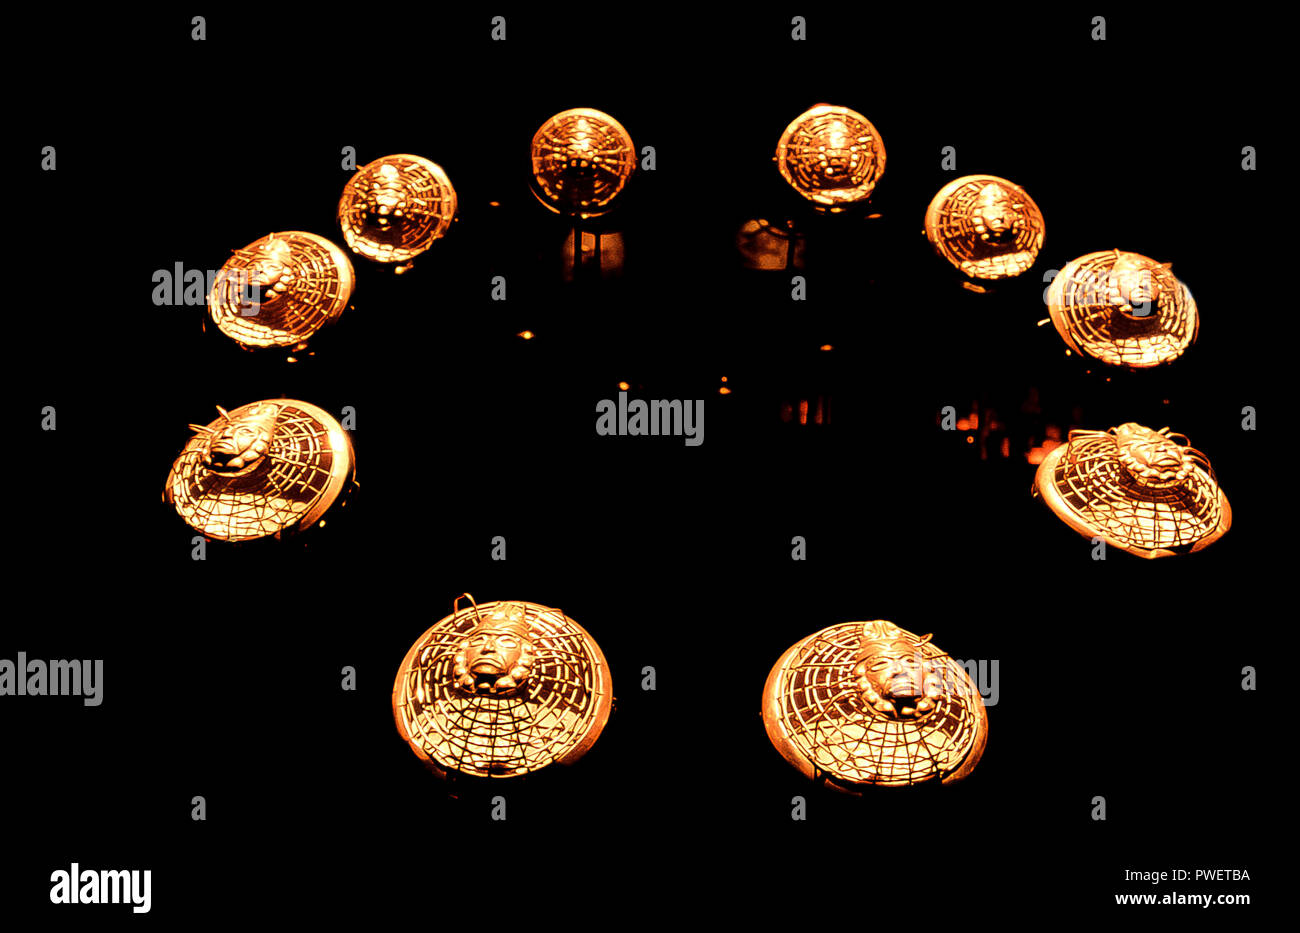 Pérou Lambayeque - Museo Tumbas Reales de Sipán - collier d'araignées avec des visages Banque D'Images